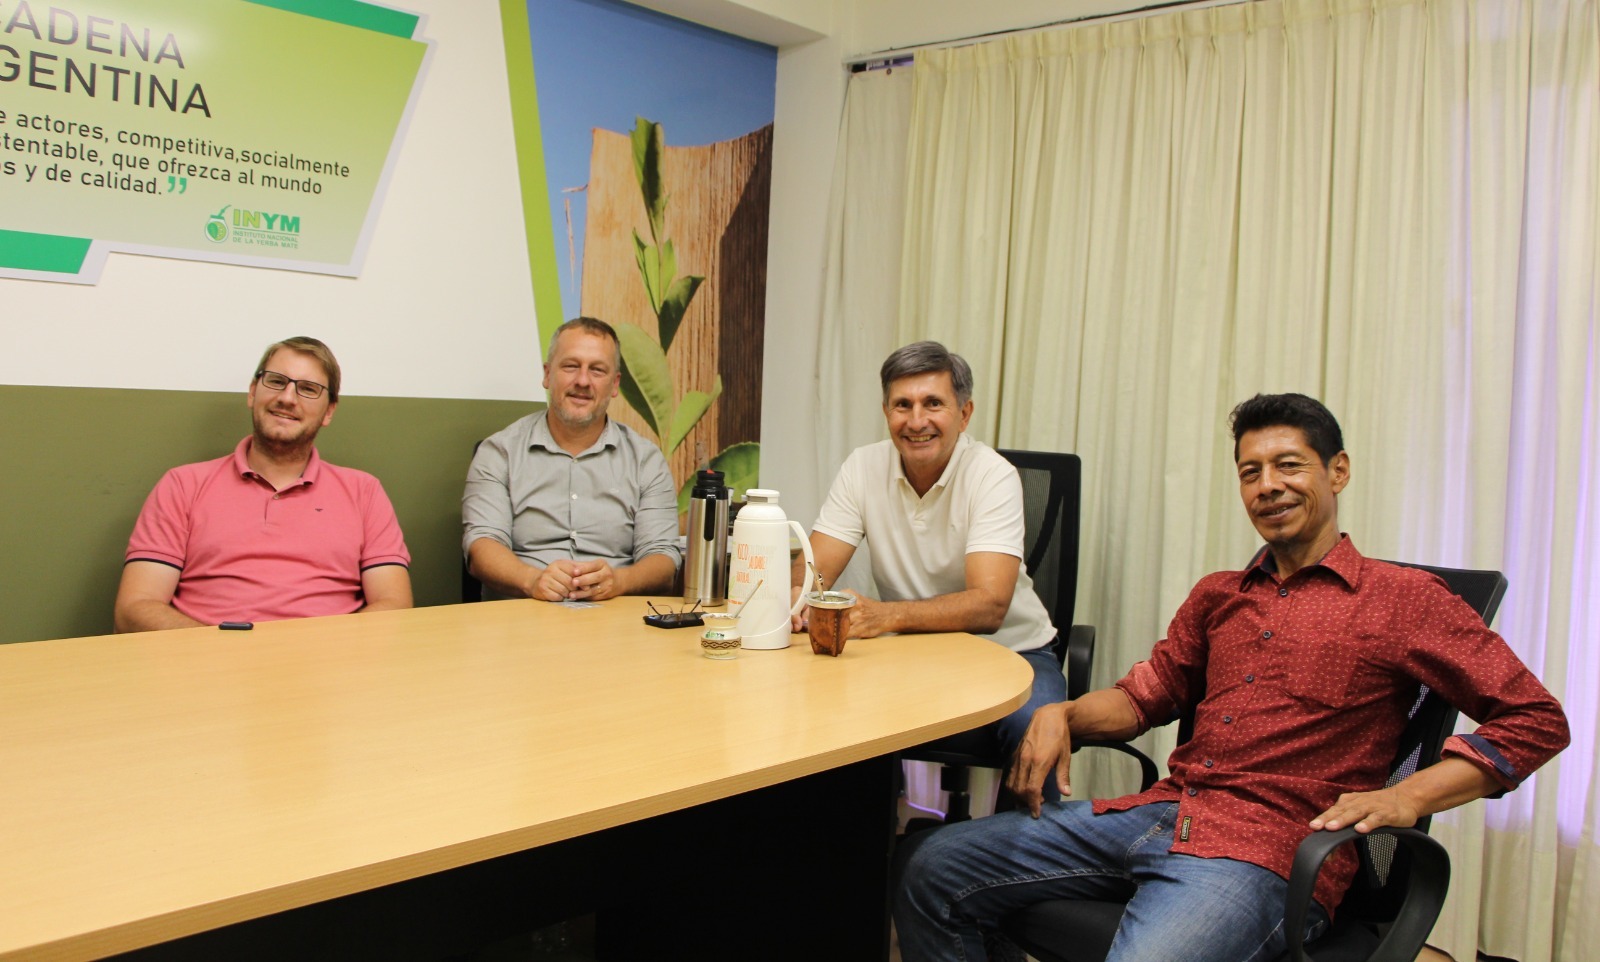 Inym acuerda con Cacique de aldea guaraní optimizar la producción de yerba mate en la comunidad imagen-1